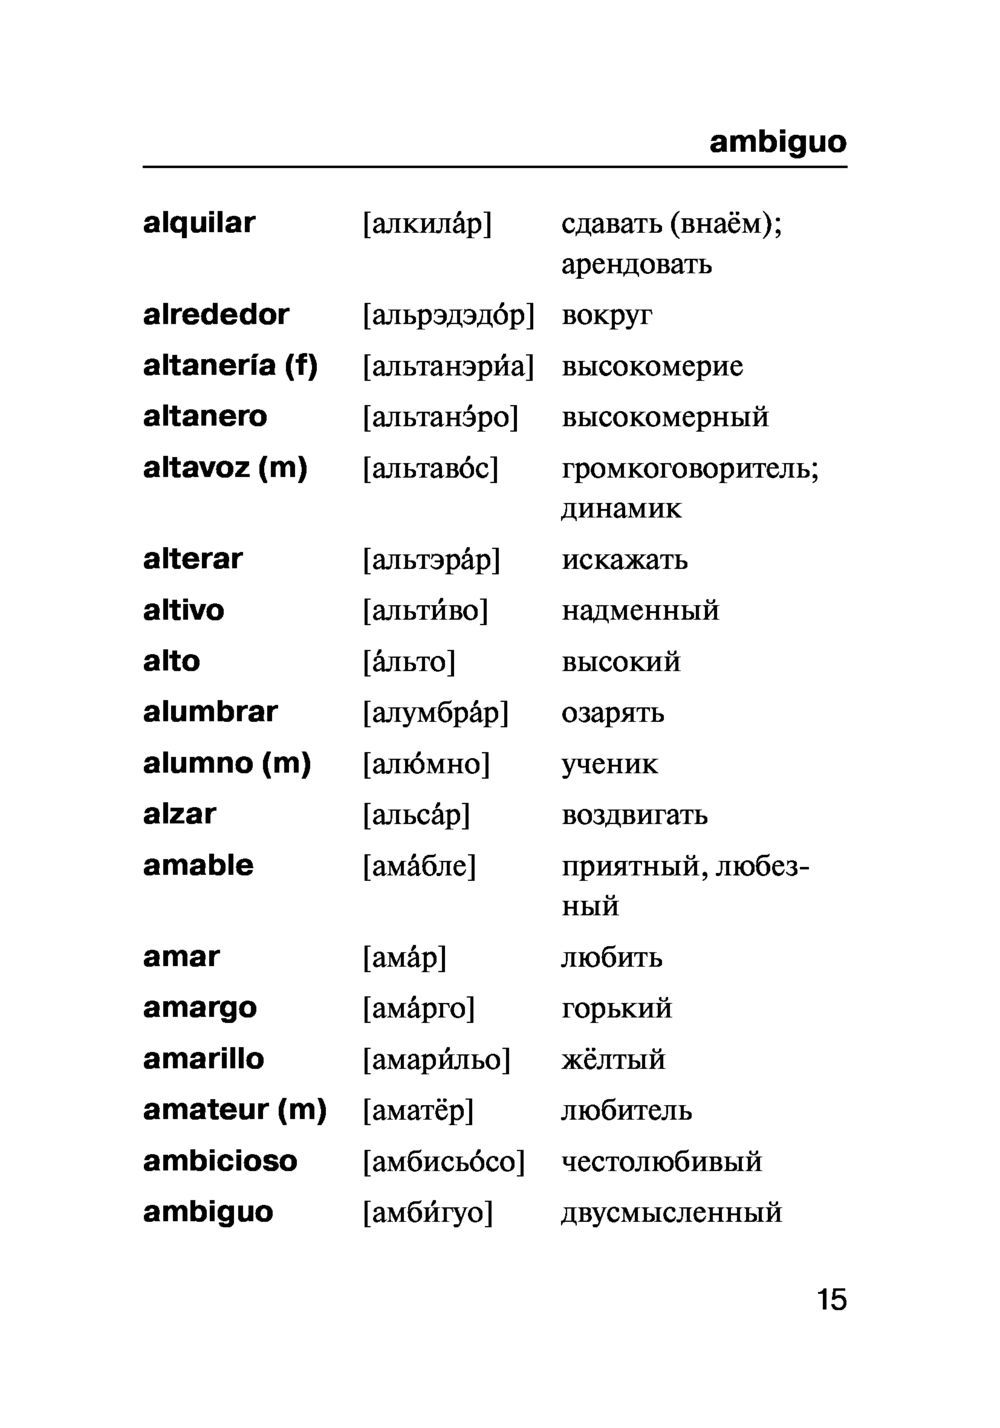 Транскрипция испанских слов